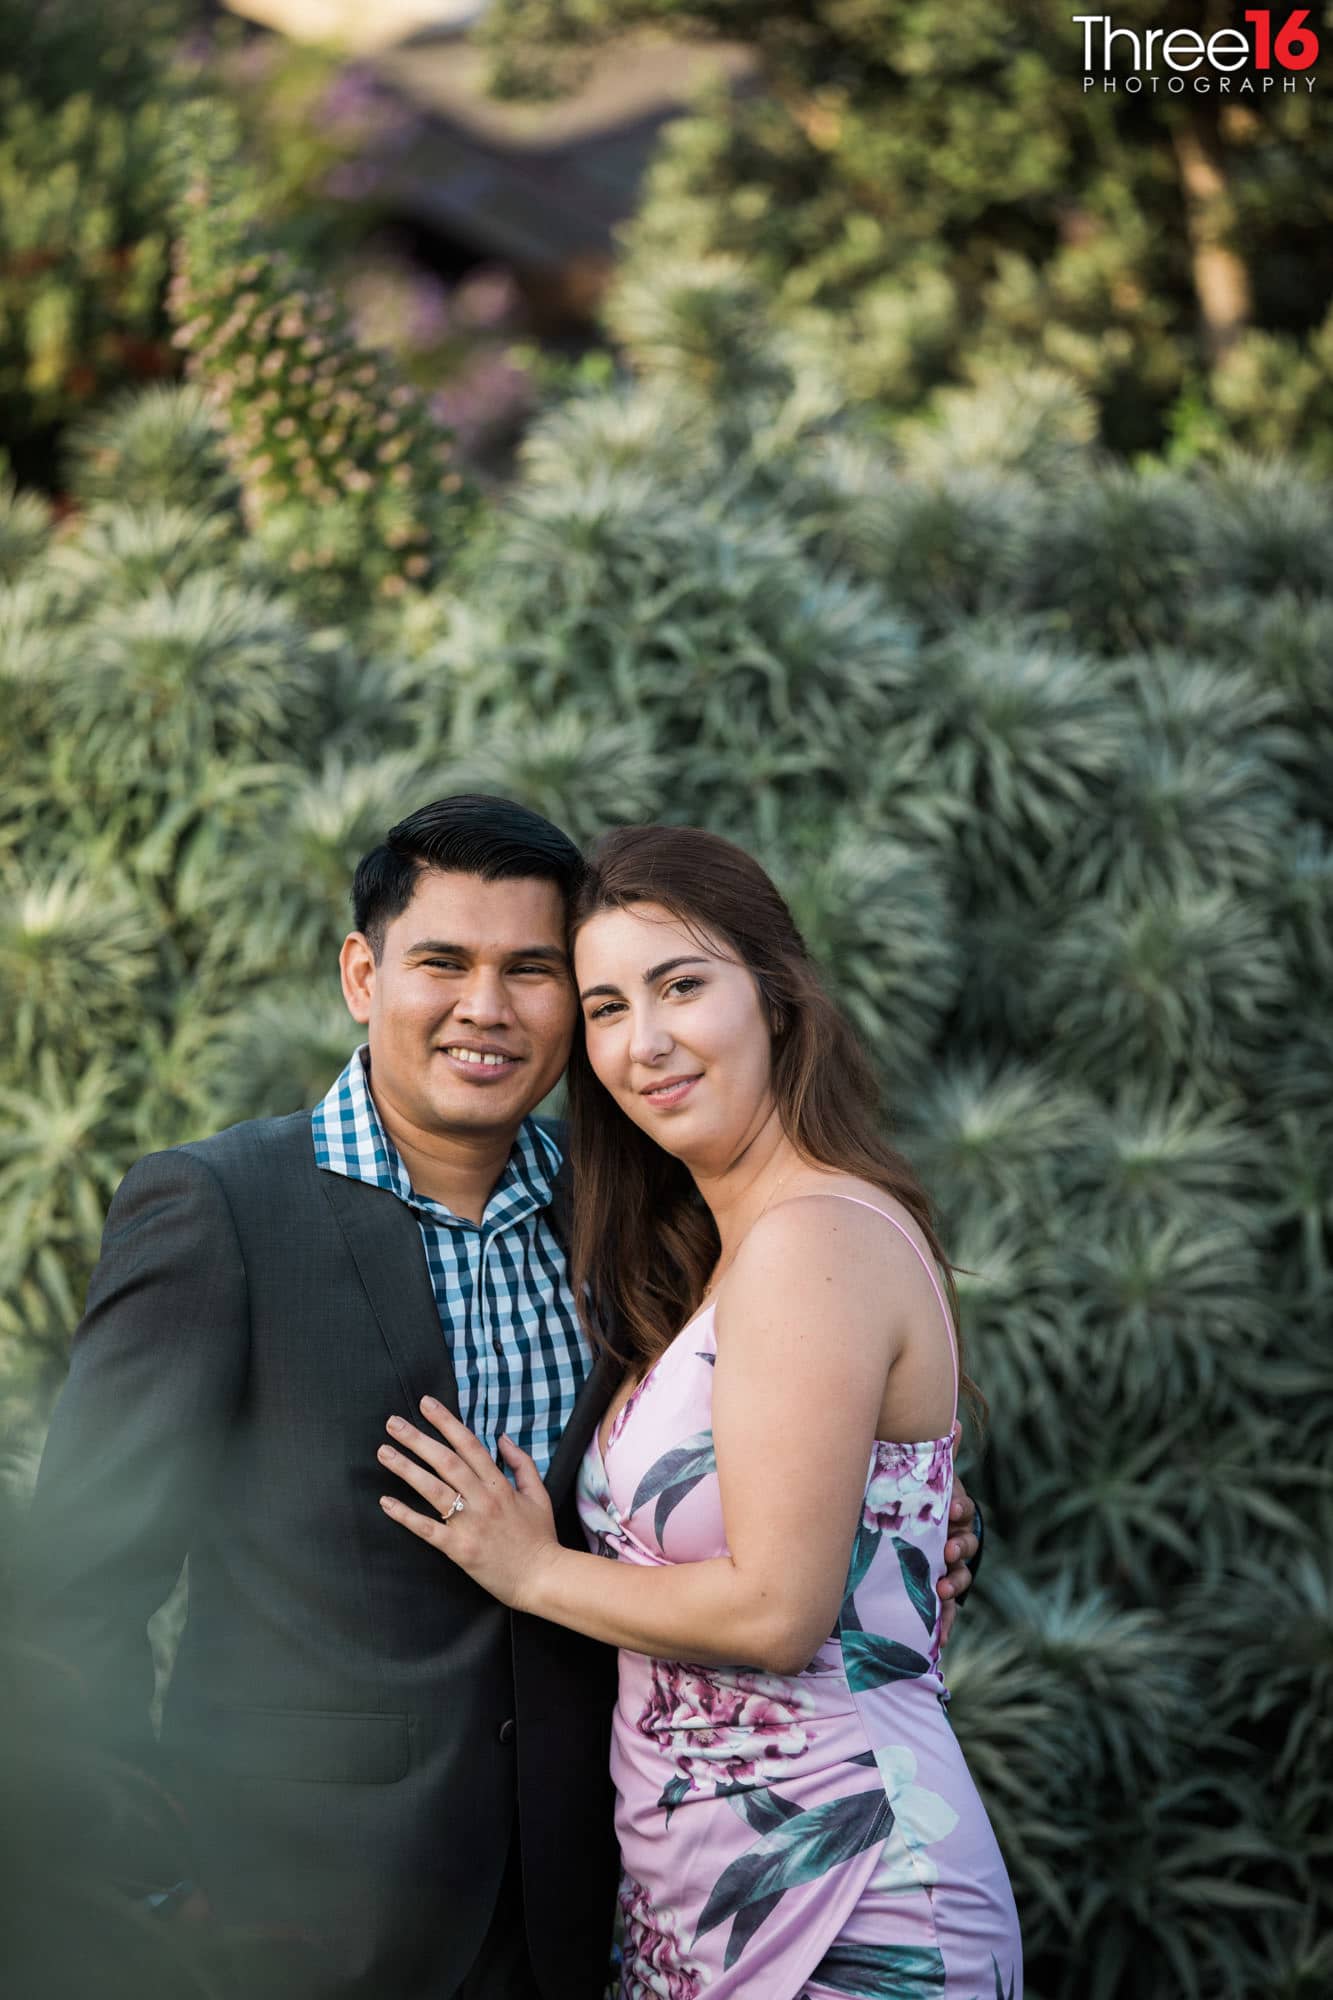 Newly engaged couple pose for wedding photographer